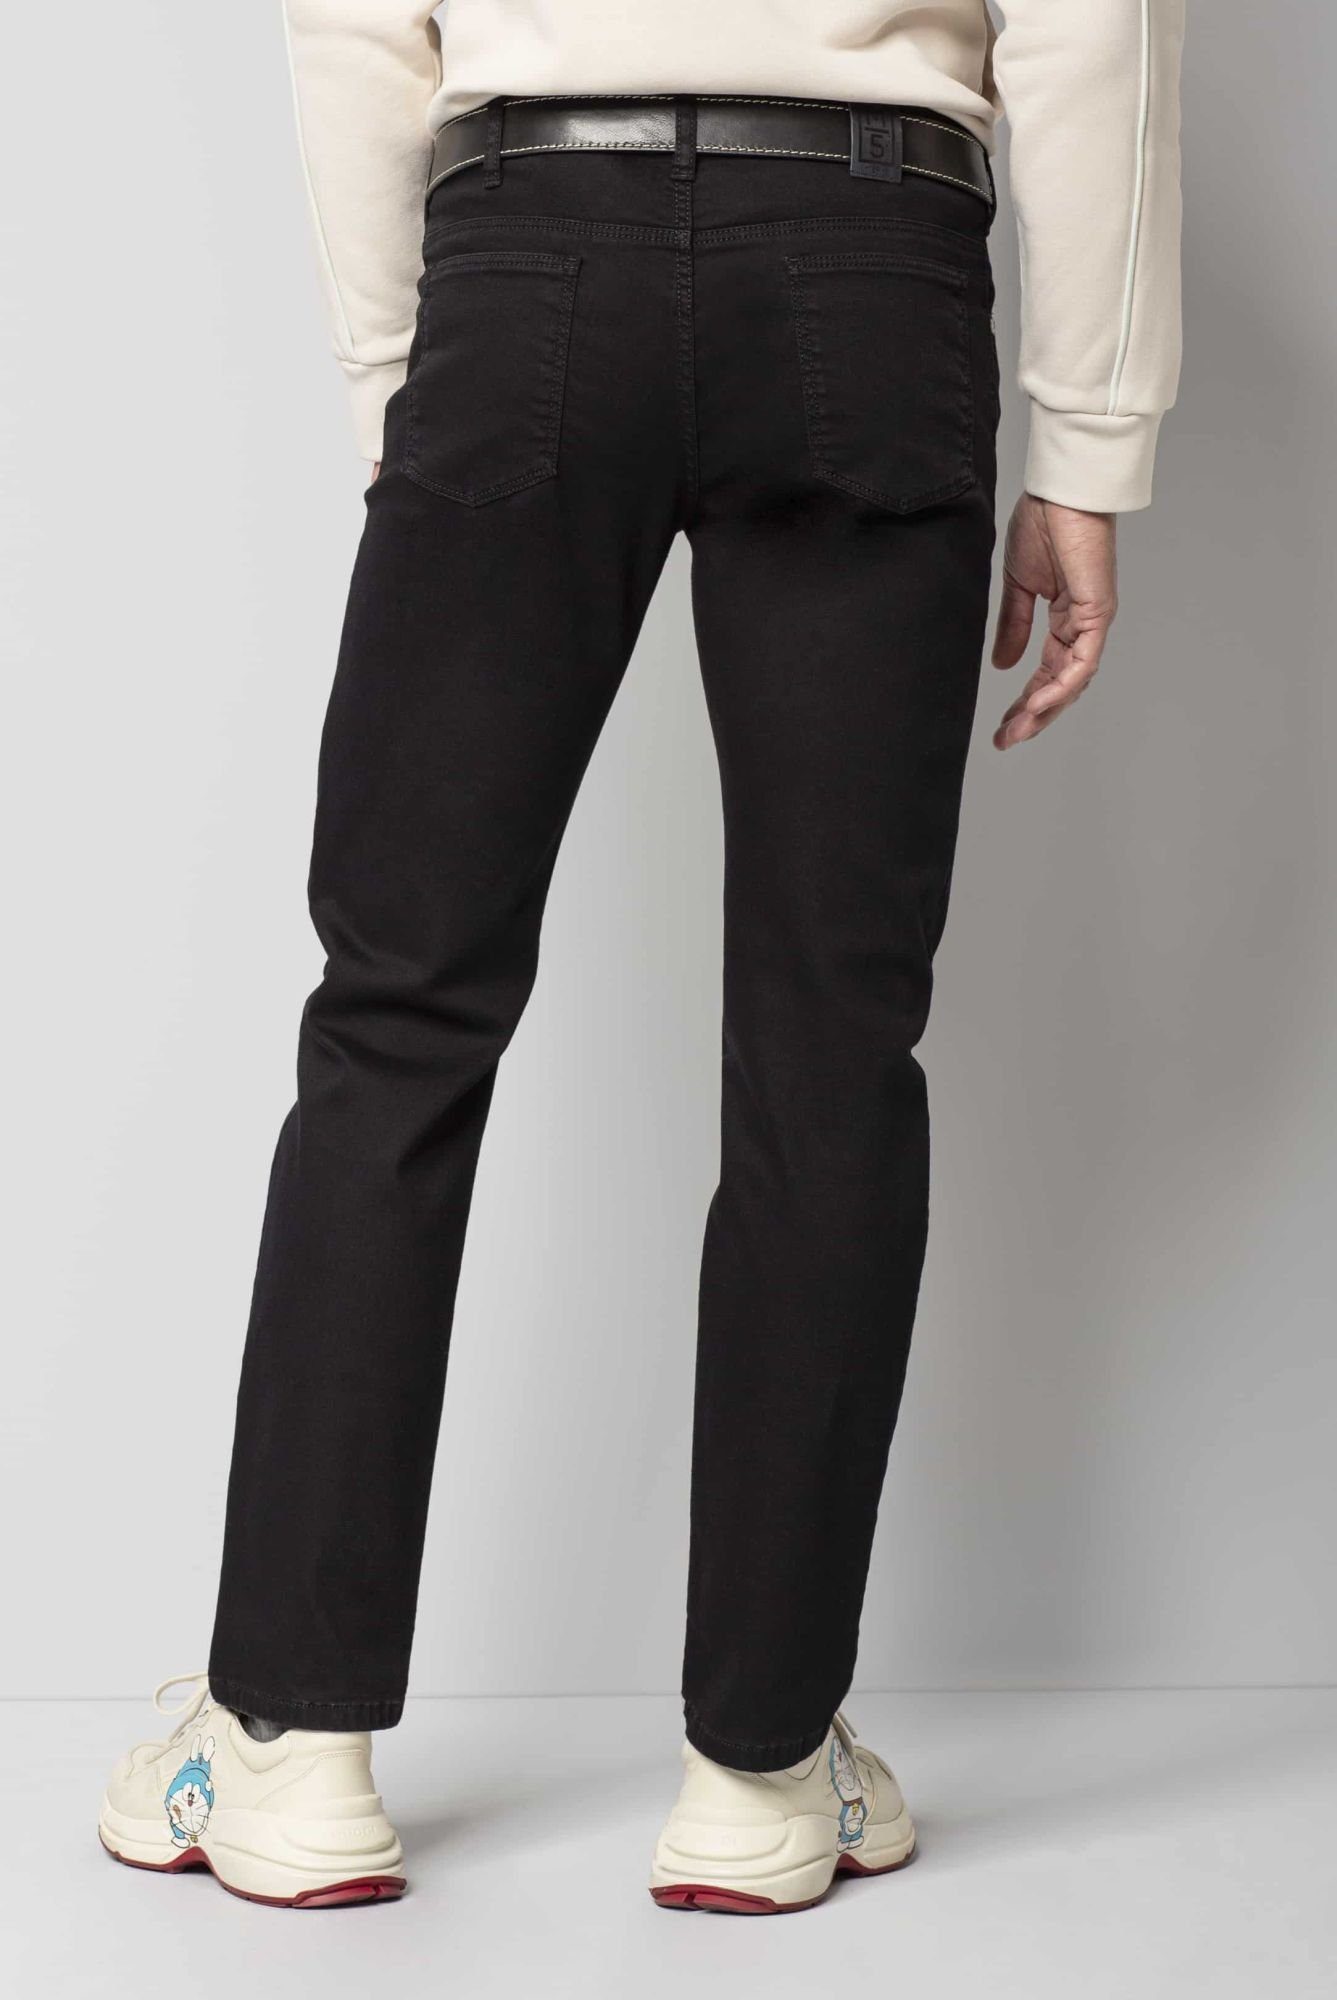 Style im Pocket MEYER Jeans Regular-fit-Jeans M5 Regular 6209 schwarz Fit Five